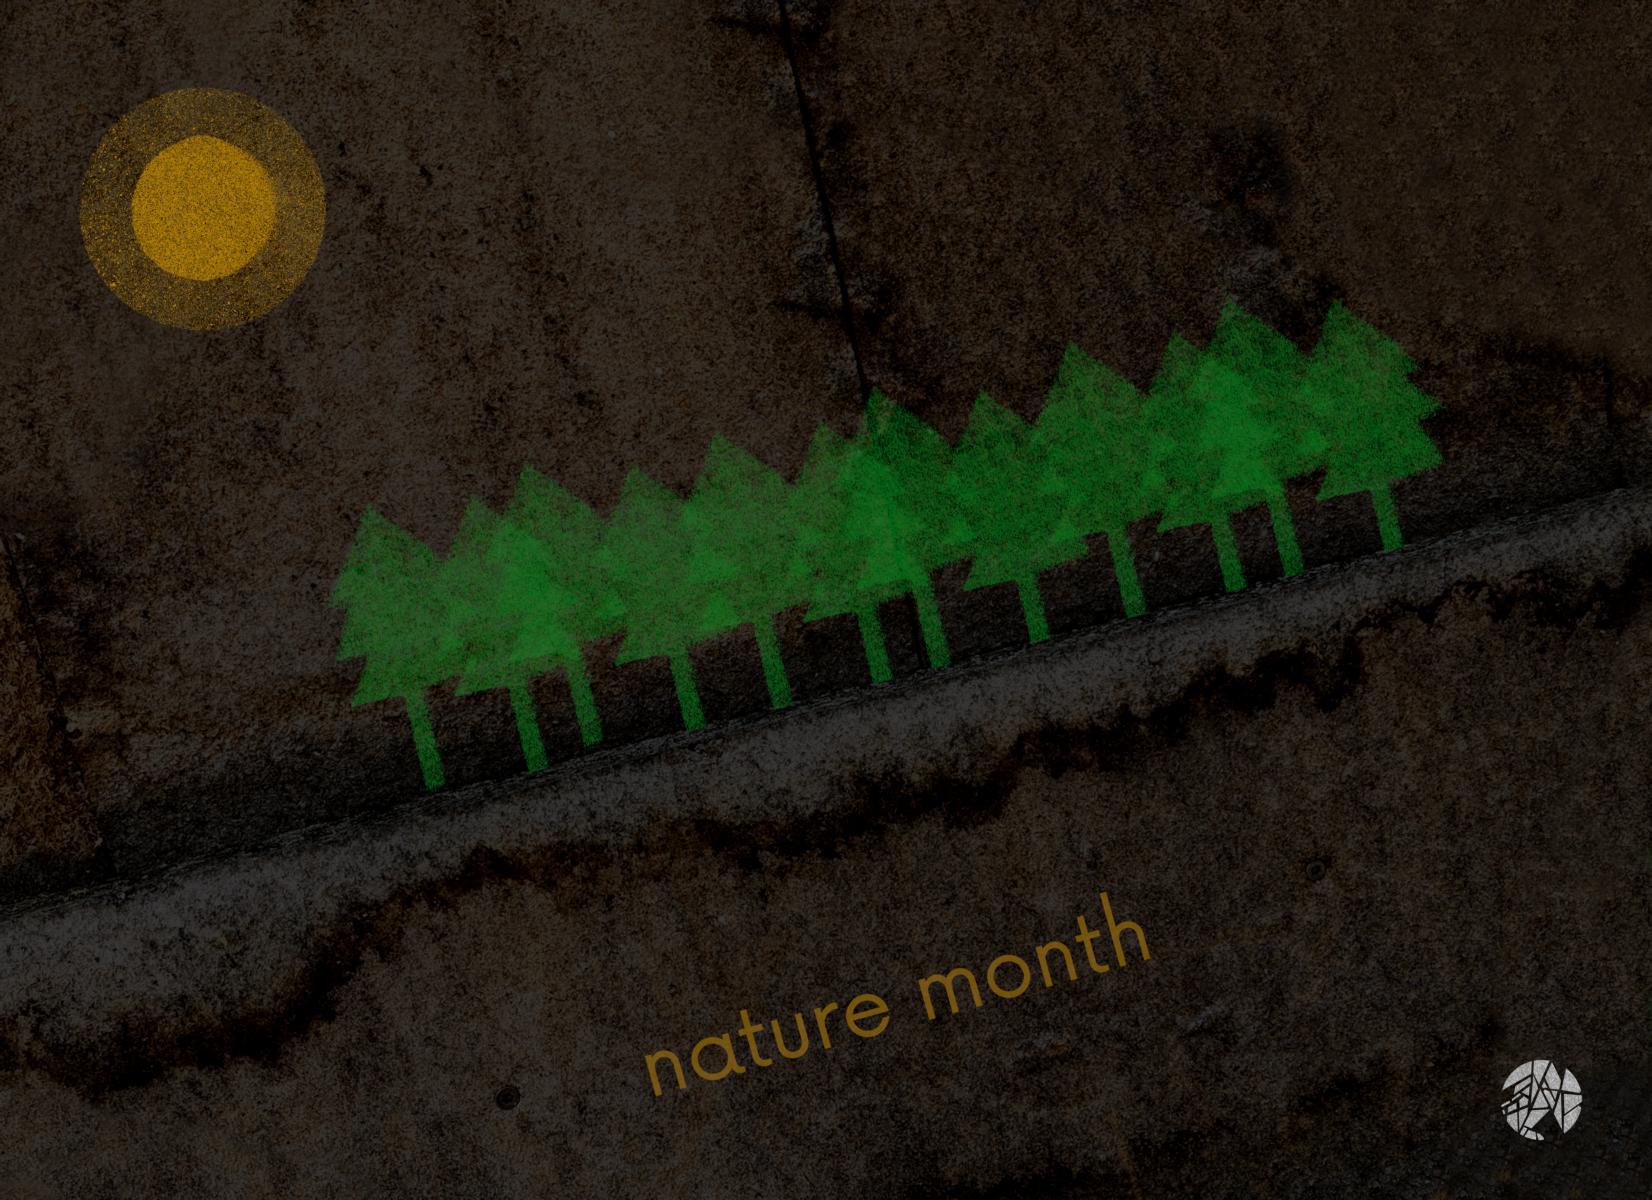 Vorbei: Nature Month